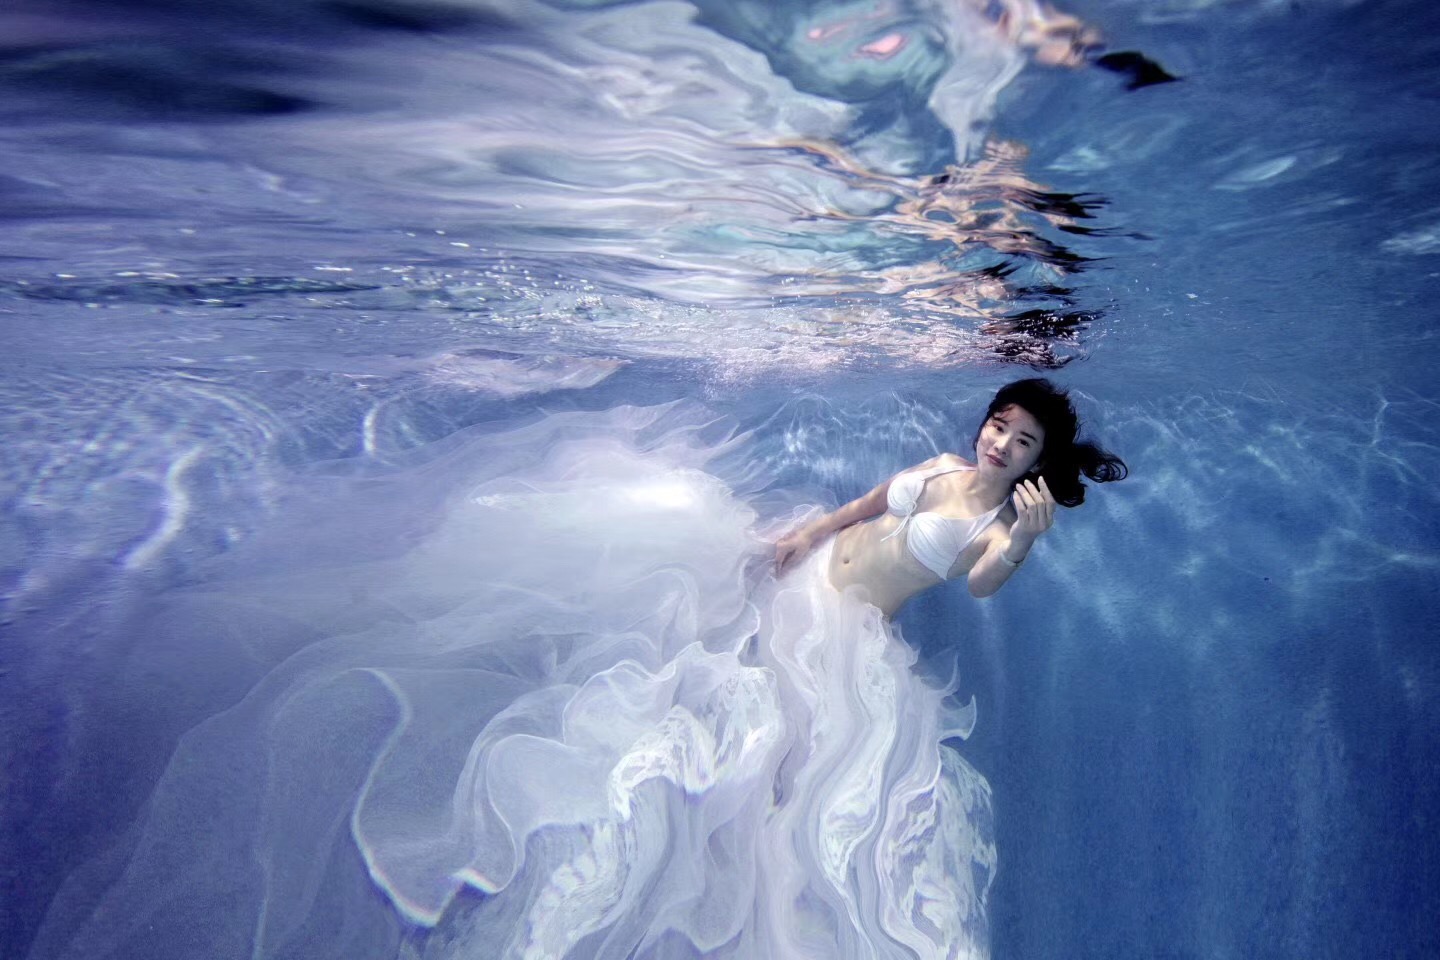 美图摄影:海底美人鱼,如梦似幻,守候的王子在岸边吗